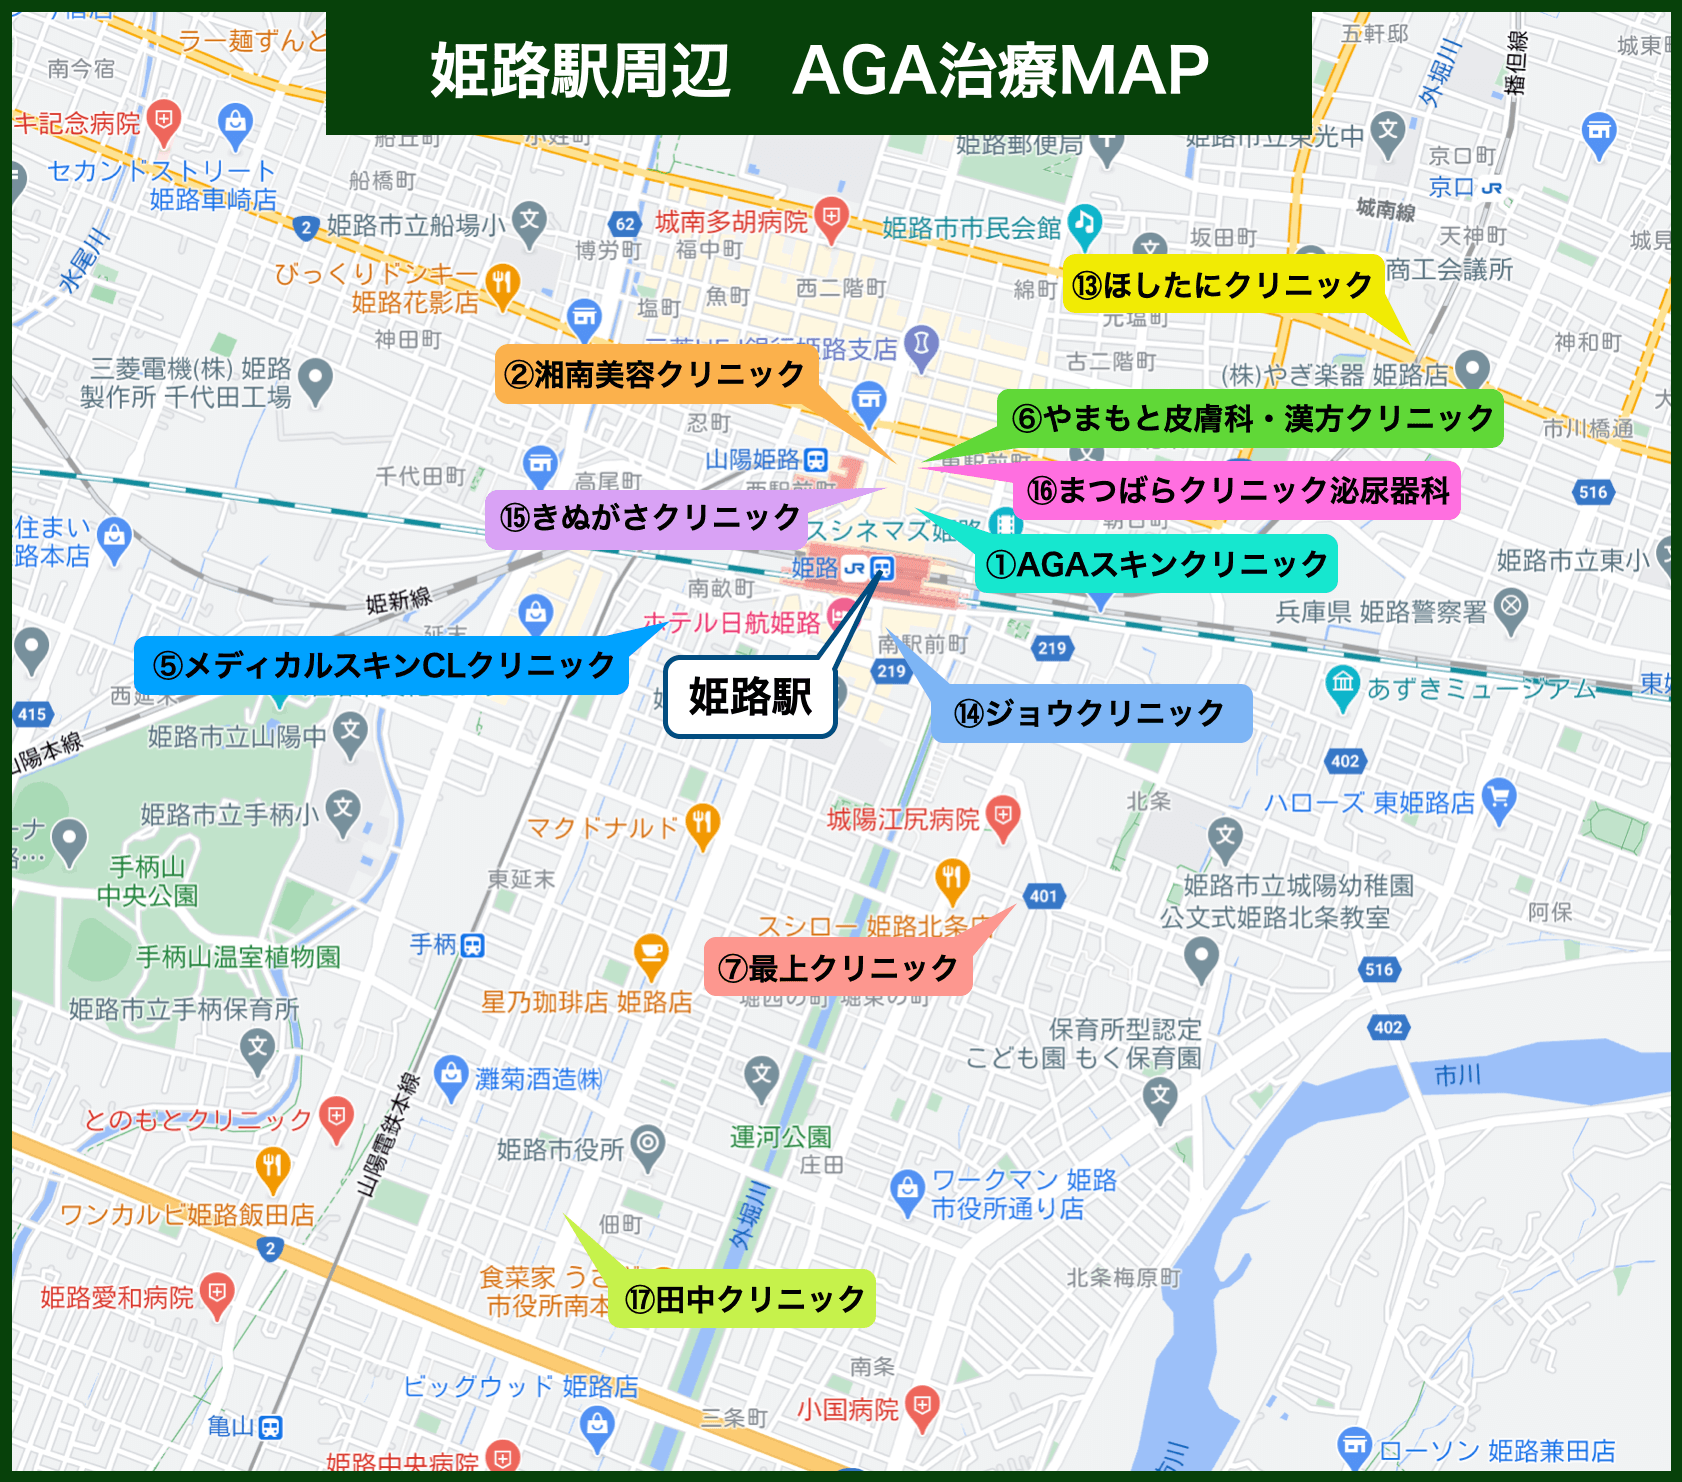 姫路駅周辺 AGA治療MAP